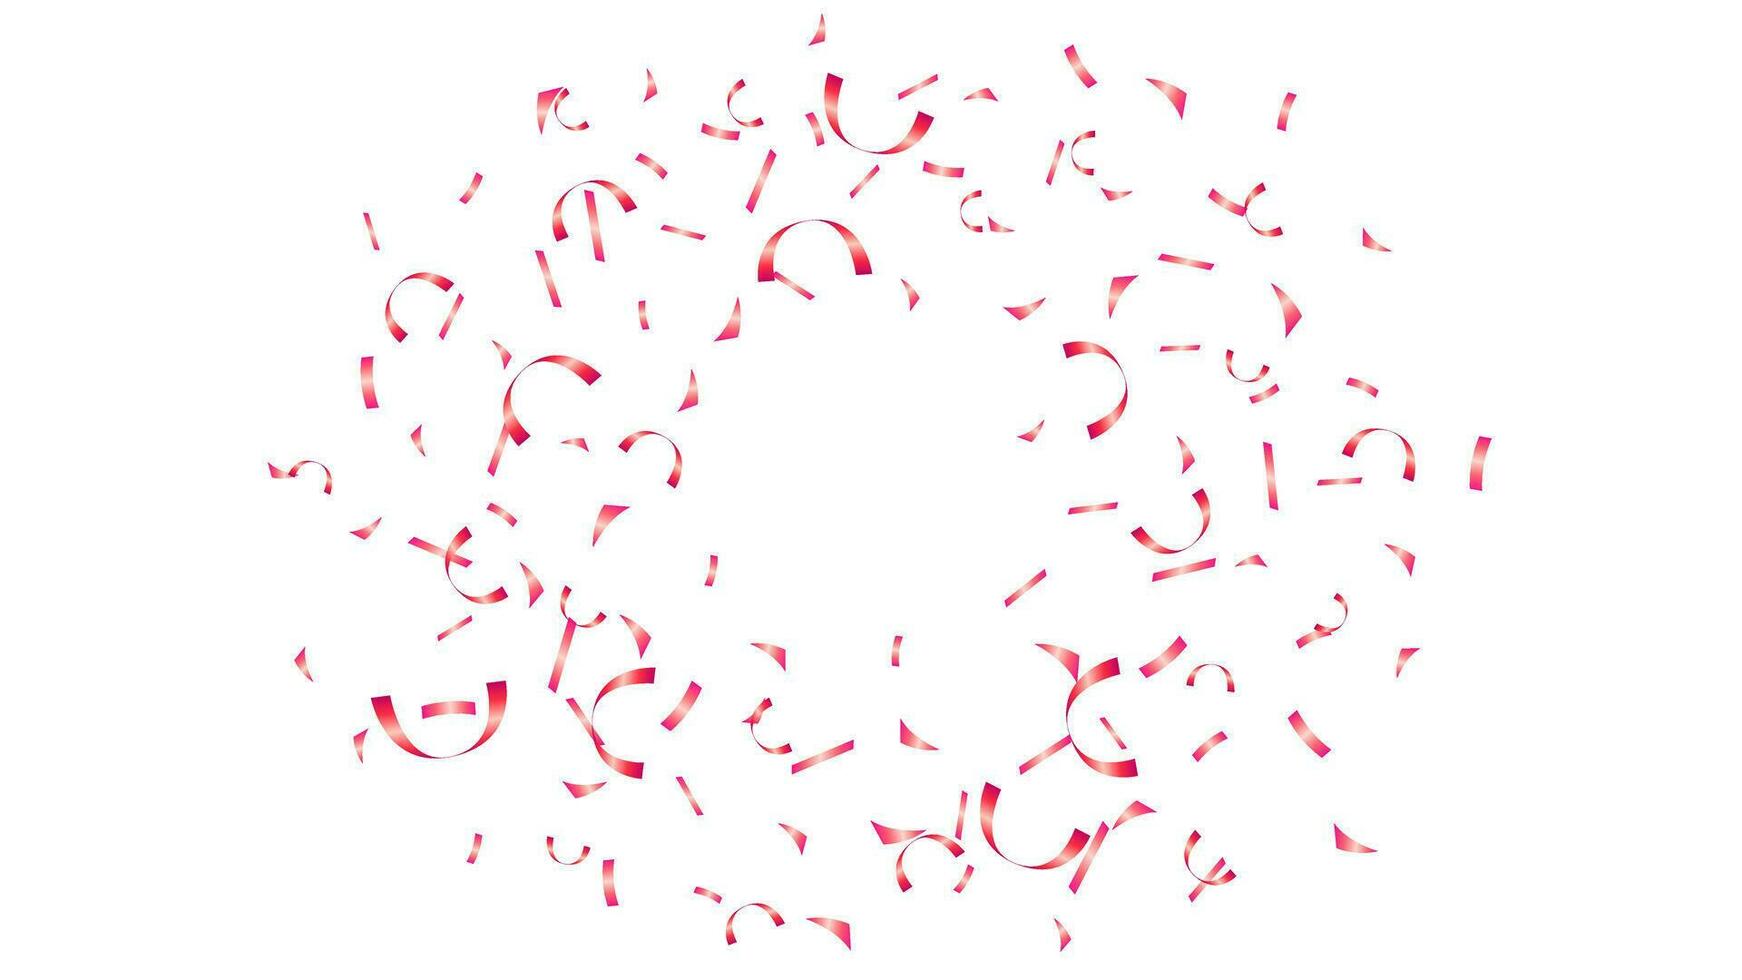 dekoration bakgrund baner med spricker runda röd konfetti för Semester, fest, födelsedag vektor